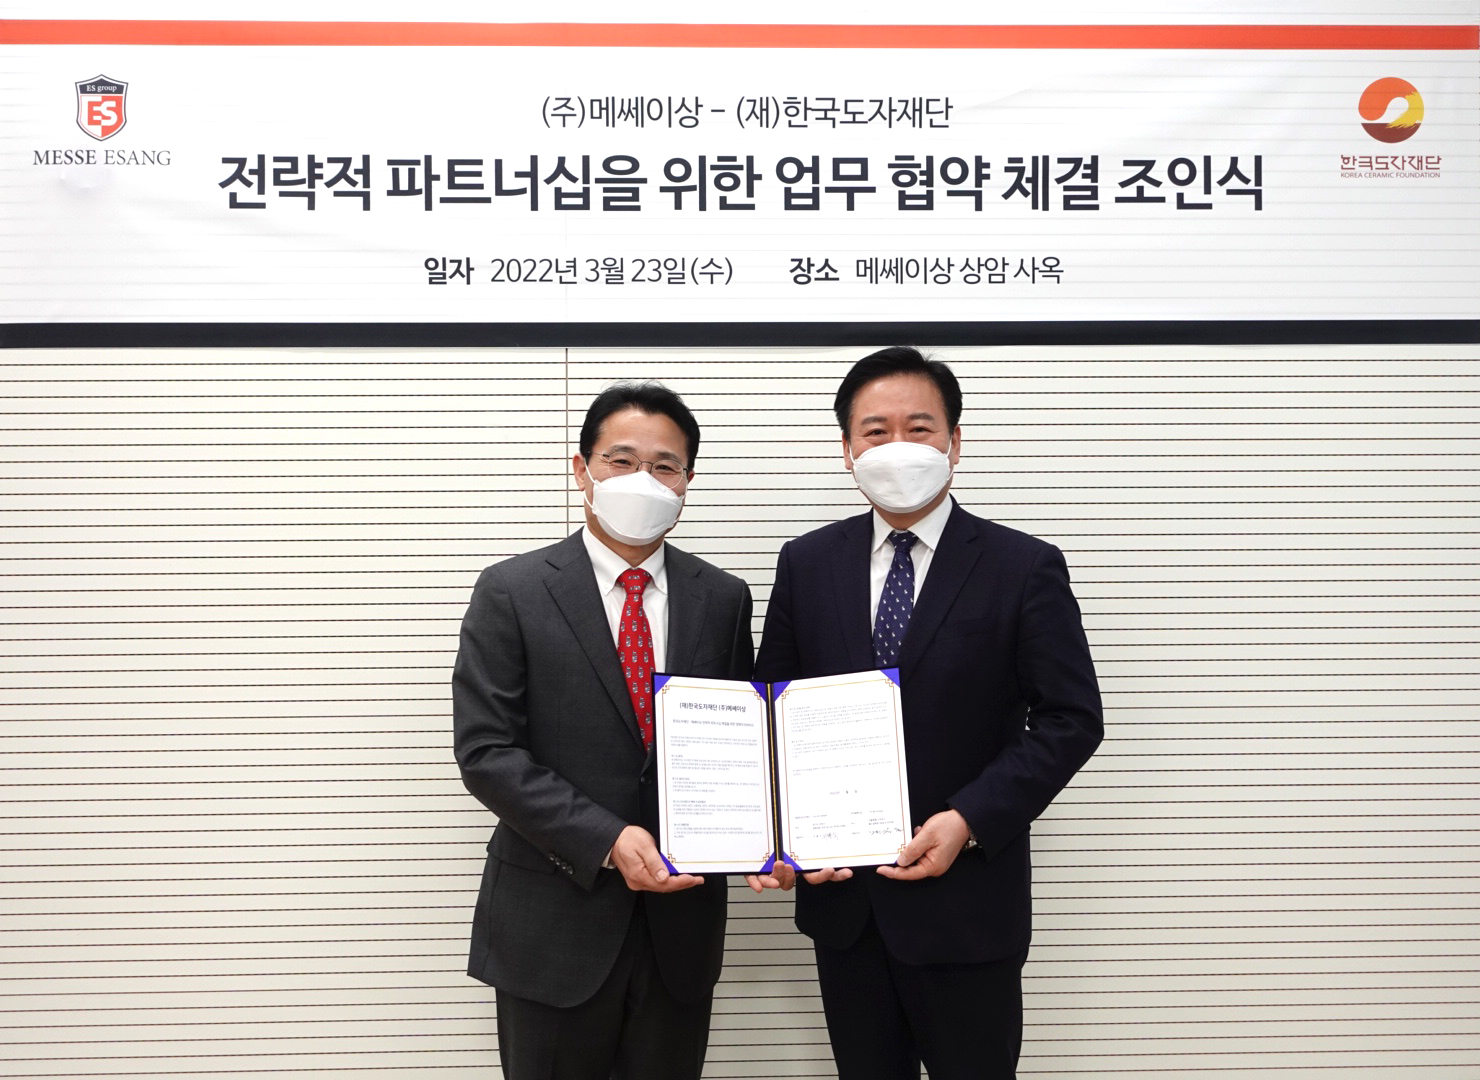 한국도자재단-(주)메쎄이상, ‘2022 경기도자페어, 핸드아티코리아’ 성공적 공동 개최 위